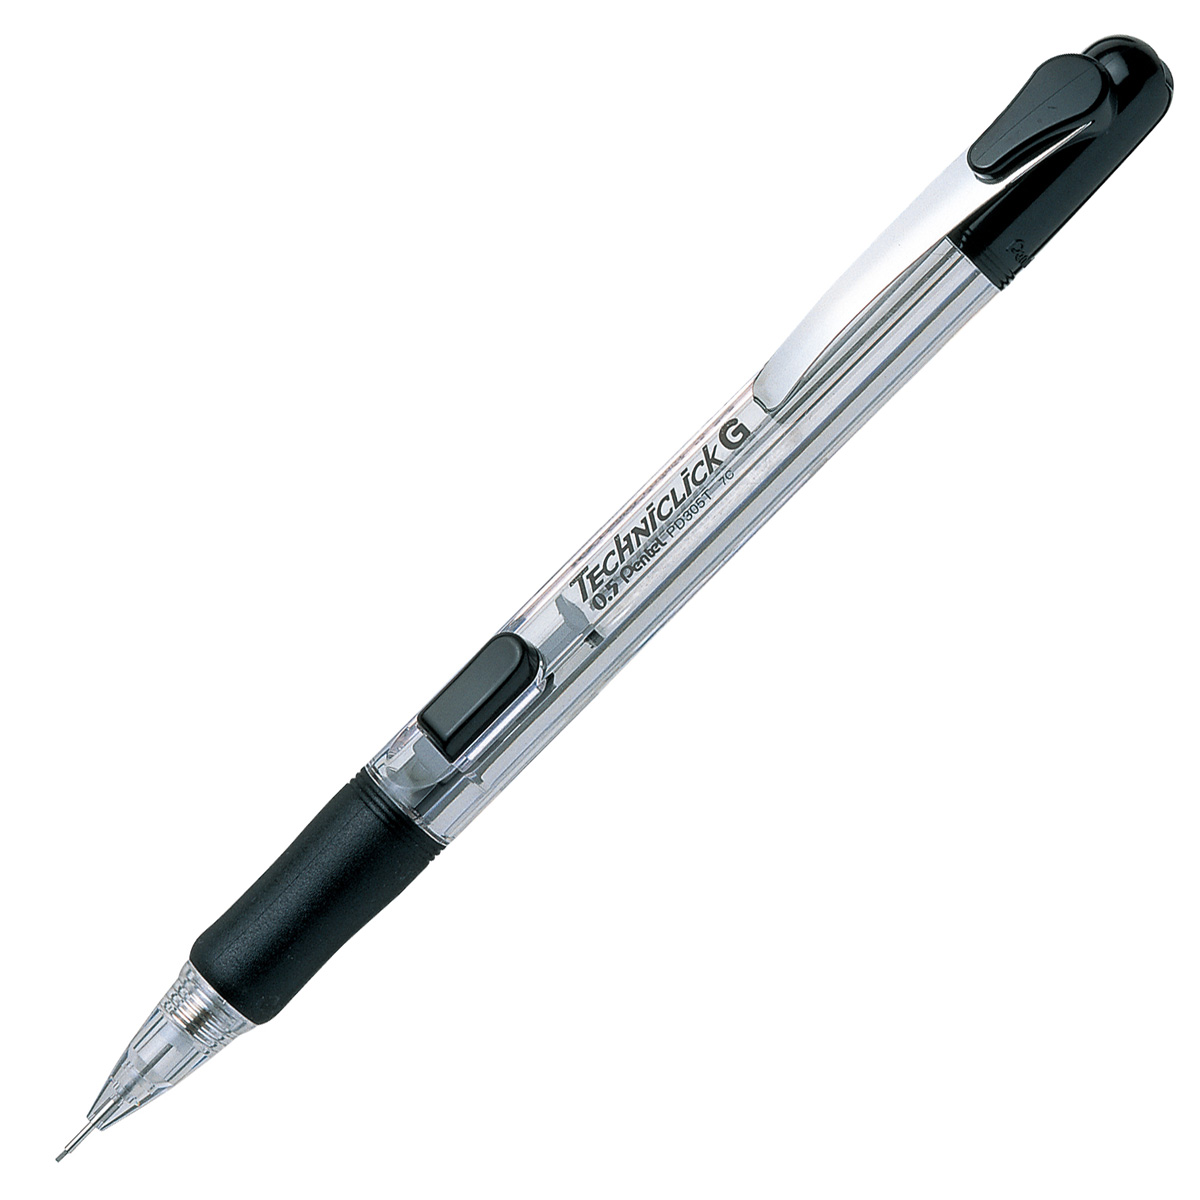 Карандаш 0.5 мм. Pentel Pencil 0 5 mm with HB Graphite. Карандаш Pentel Techniclick. Механический карандаш Techniclick. Карандаш 3.1 мм 5b.